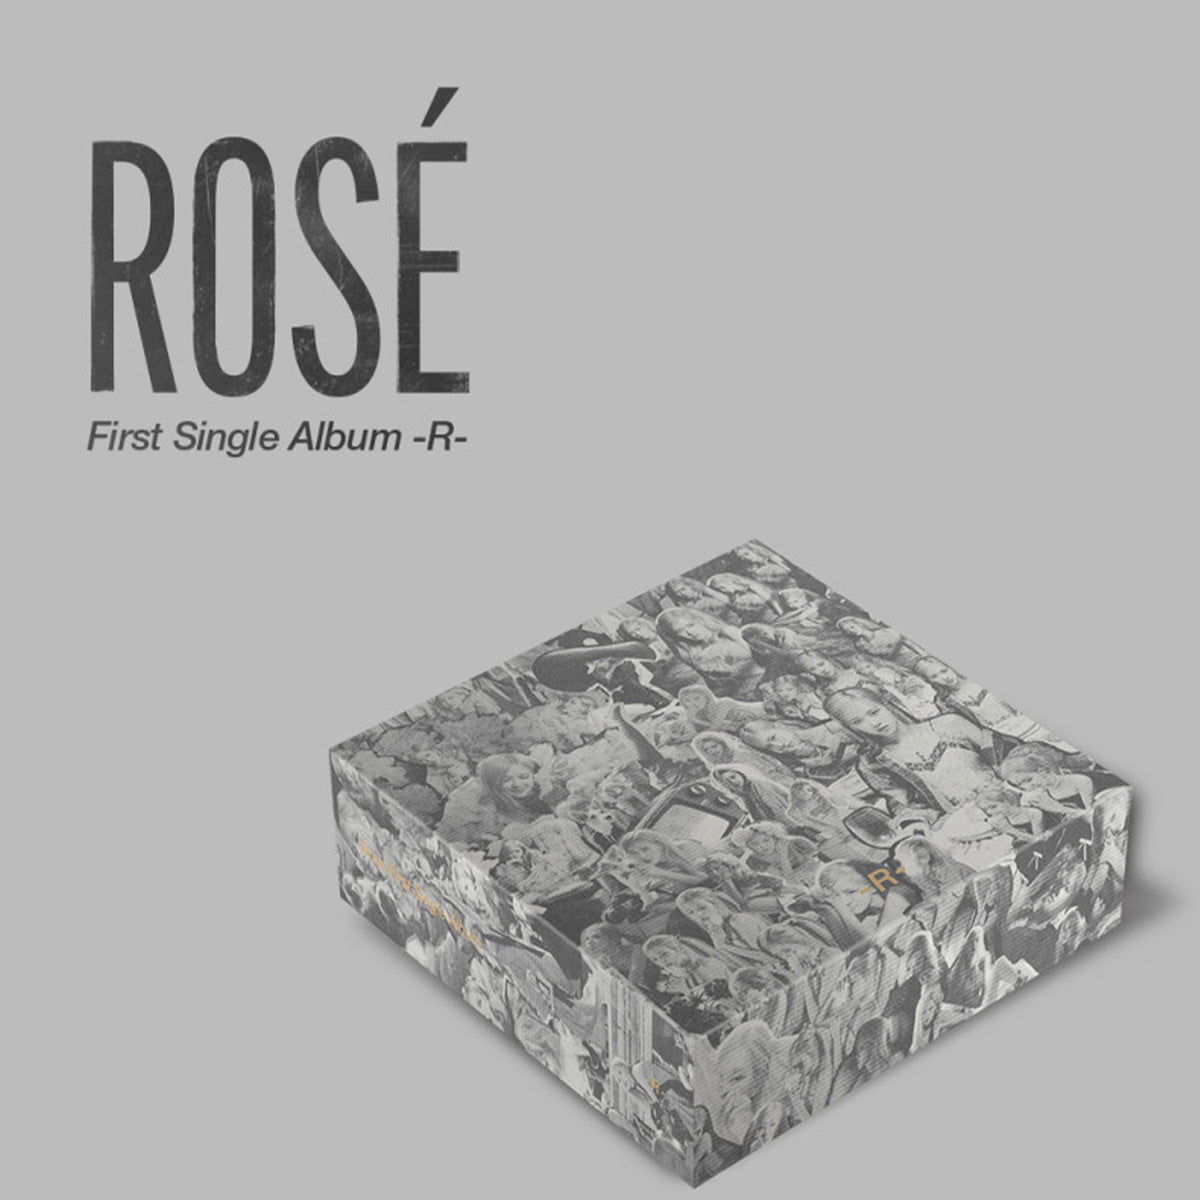 Ros?-First Single Album -R- (Kit Album) | Release date 2021-03-16